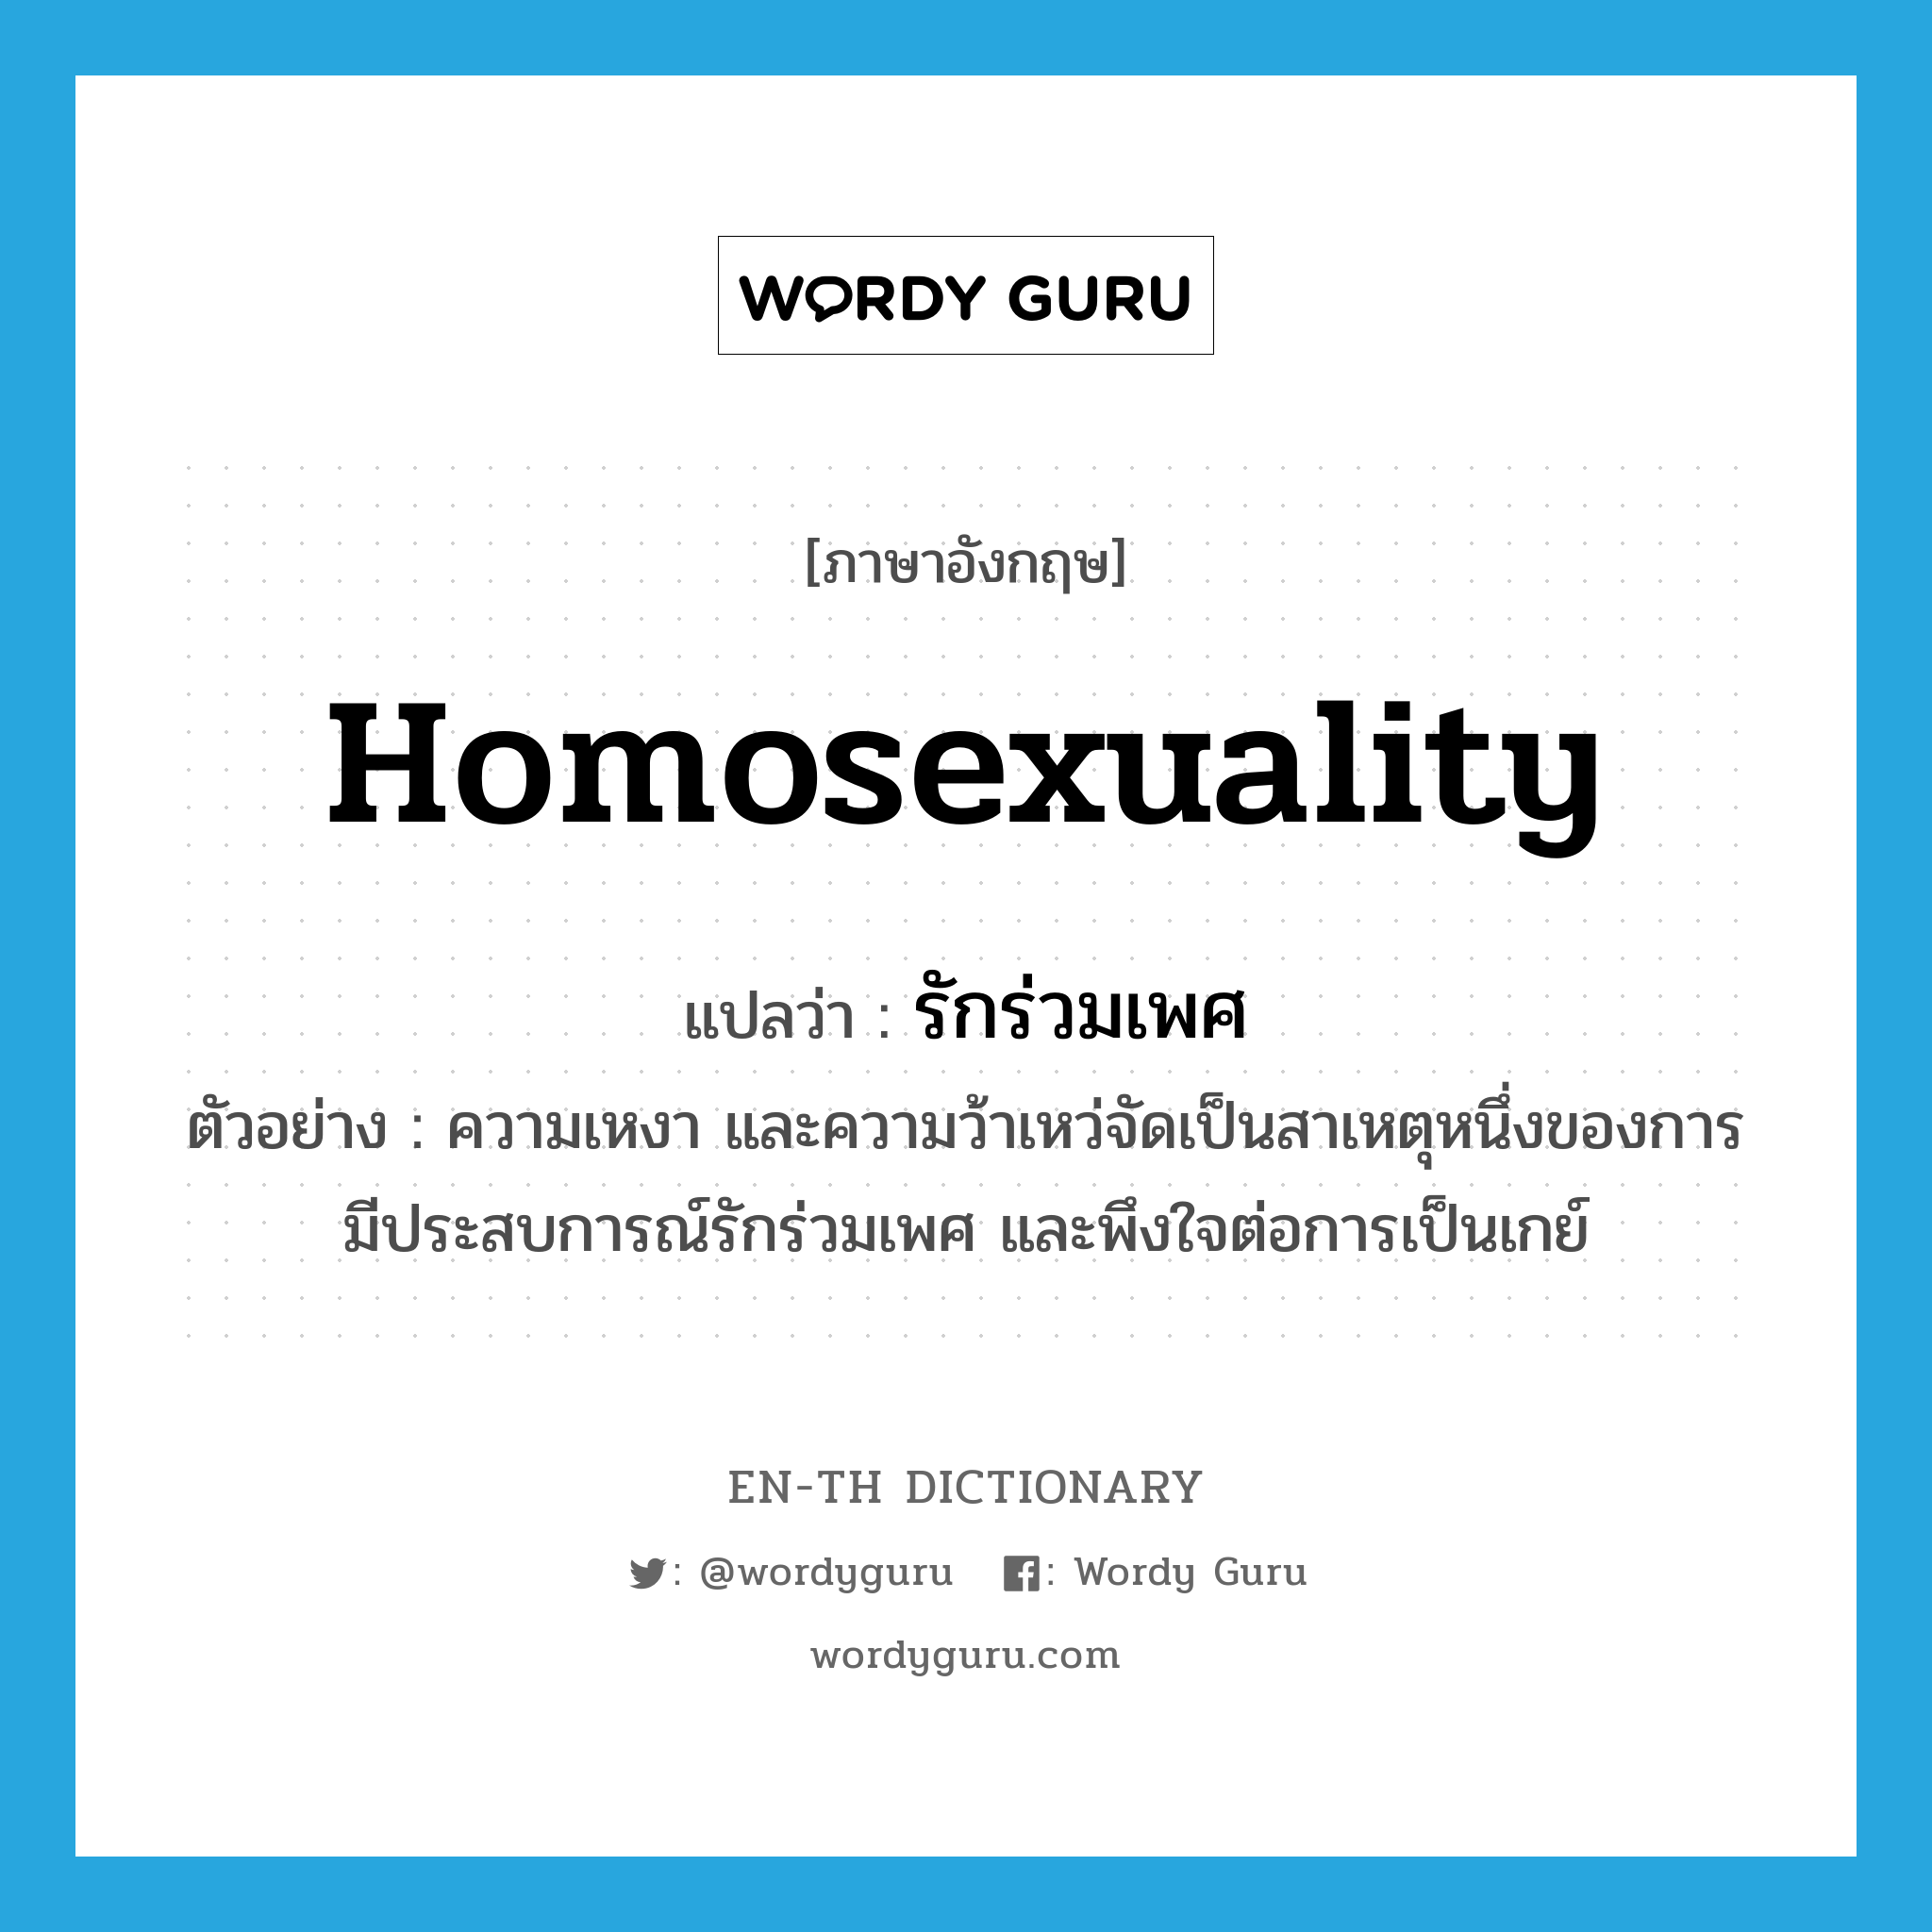 homosexuality แปลว่า?, คำศัพท์ภาษาอังกฤษ homosexuality แปลว่า รักร่วมเพศ ประเภท N ตัวอย่าง ความเหงา และความว้าเหว่จัดเป็นสาเหตุหนึ่งของการมีประสบการณ์รักร่วมเพศ และพึงใจต่อการเป็นเกย์ หมวด N